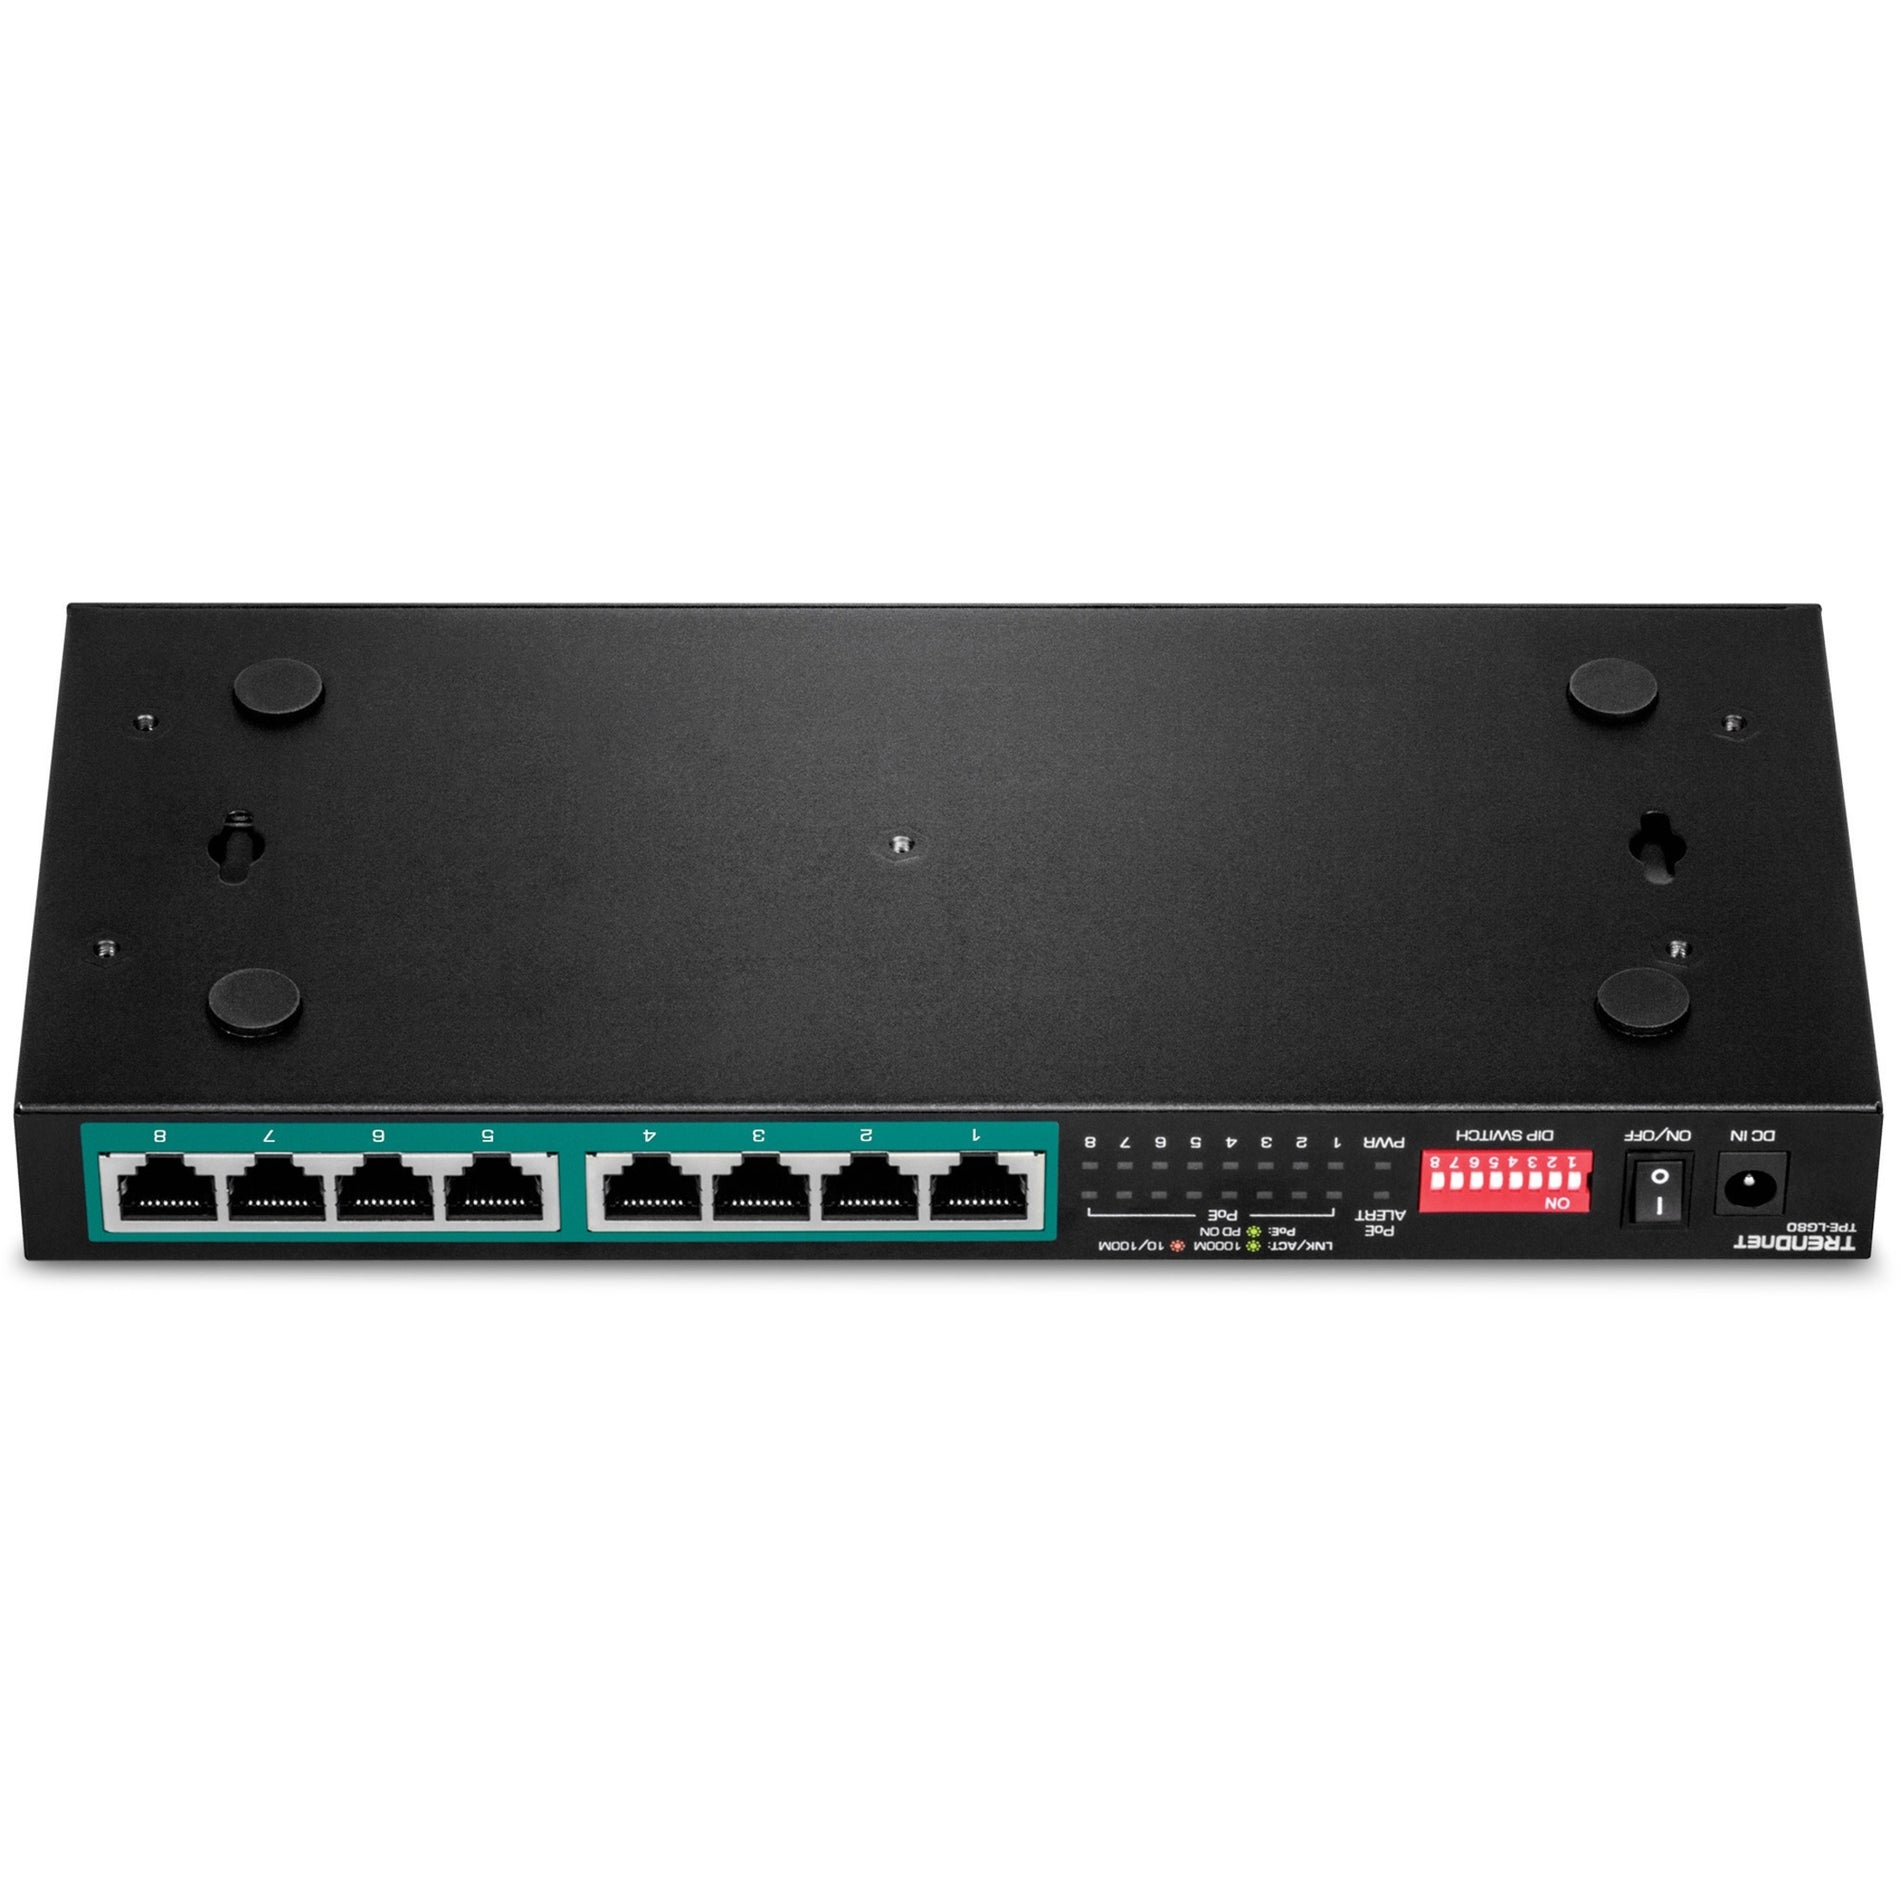 TRENDnet TPE-LG80 8-Port Gigabit Long Range PoE+ Switch, Ethernet/Network Switch